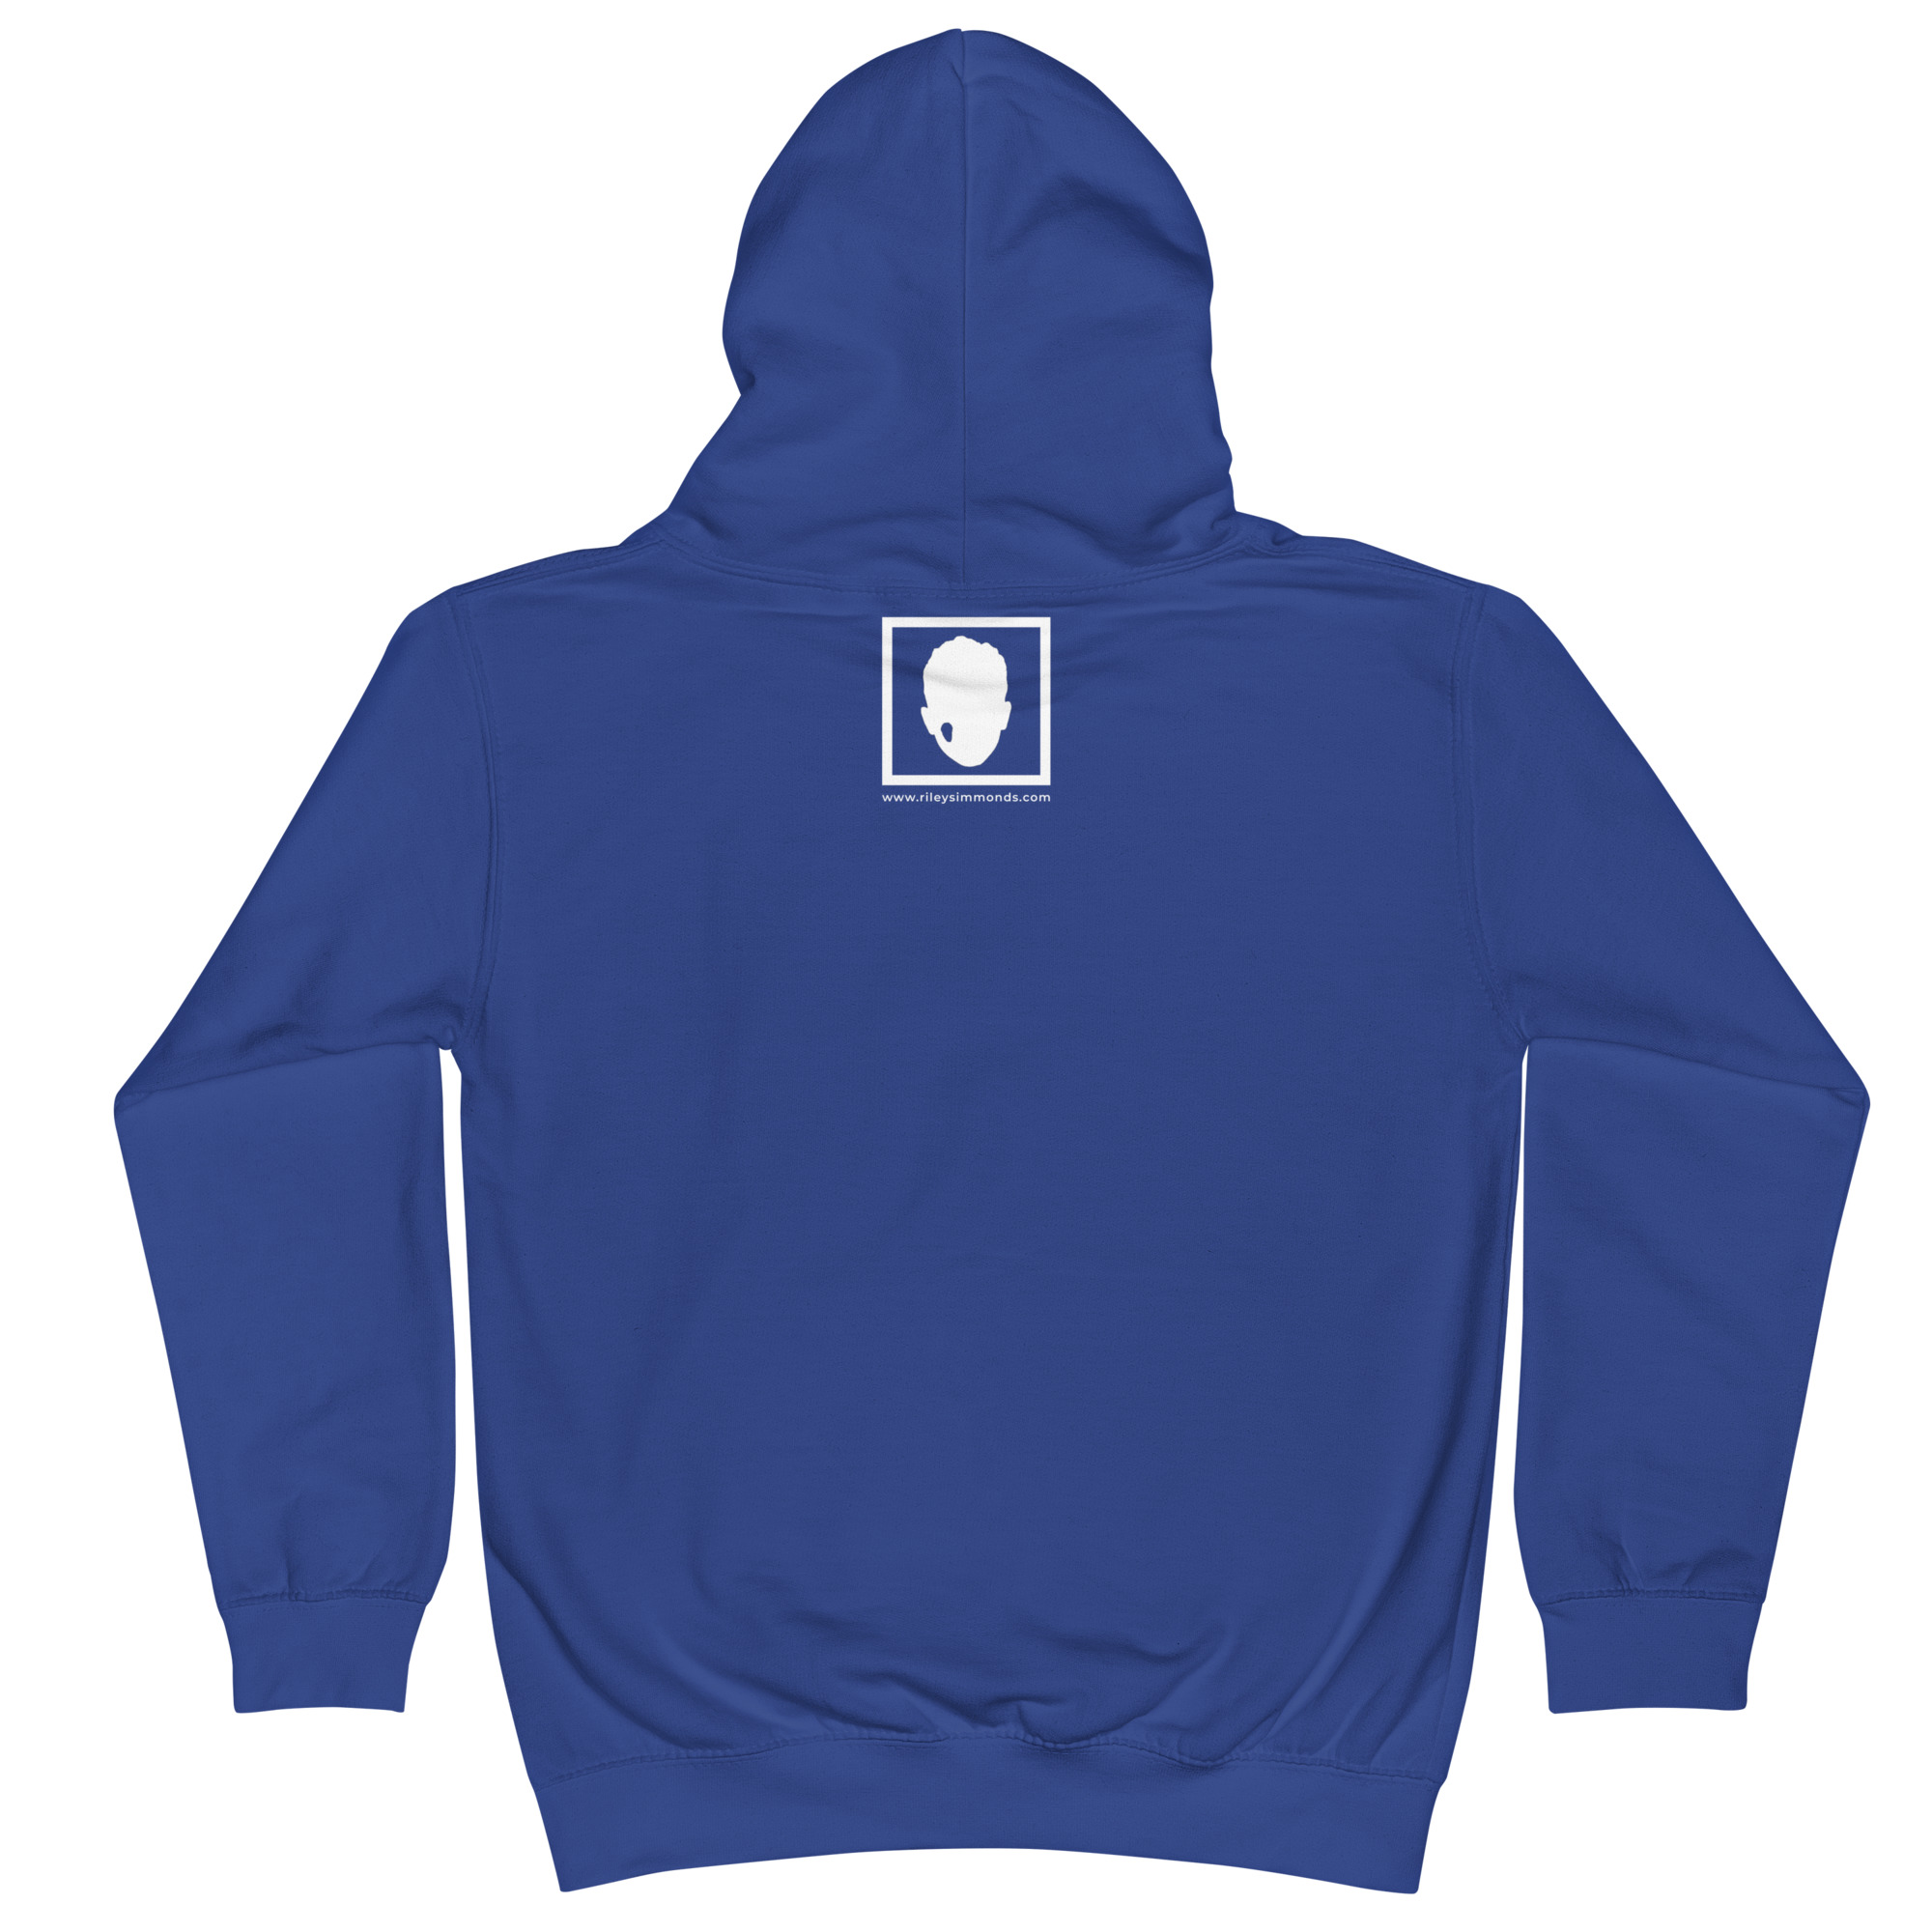 kids-hoodie-royal-blue-back-653942b1bd301.jpg